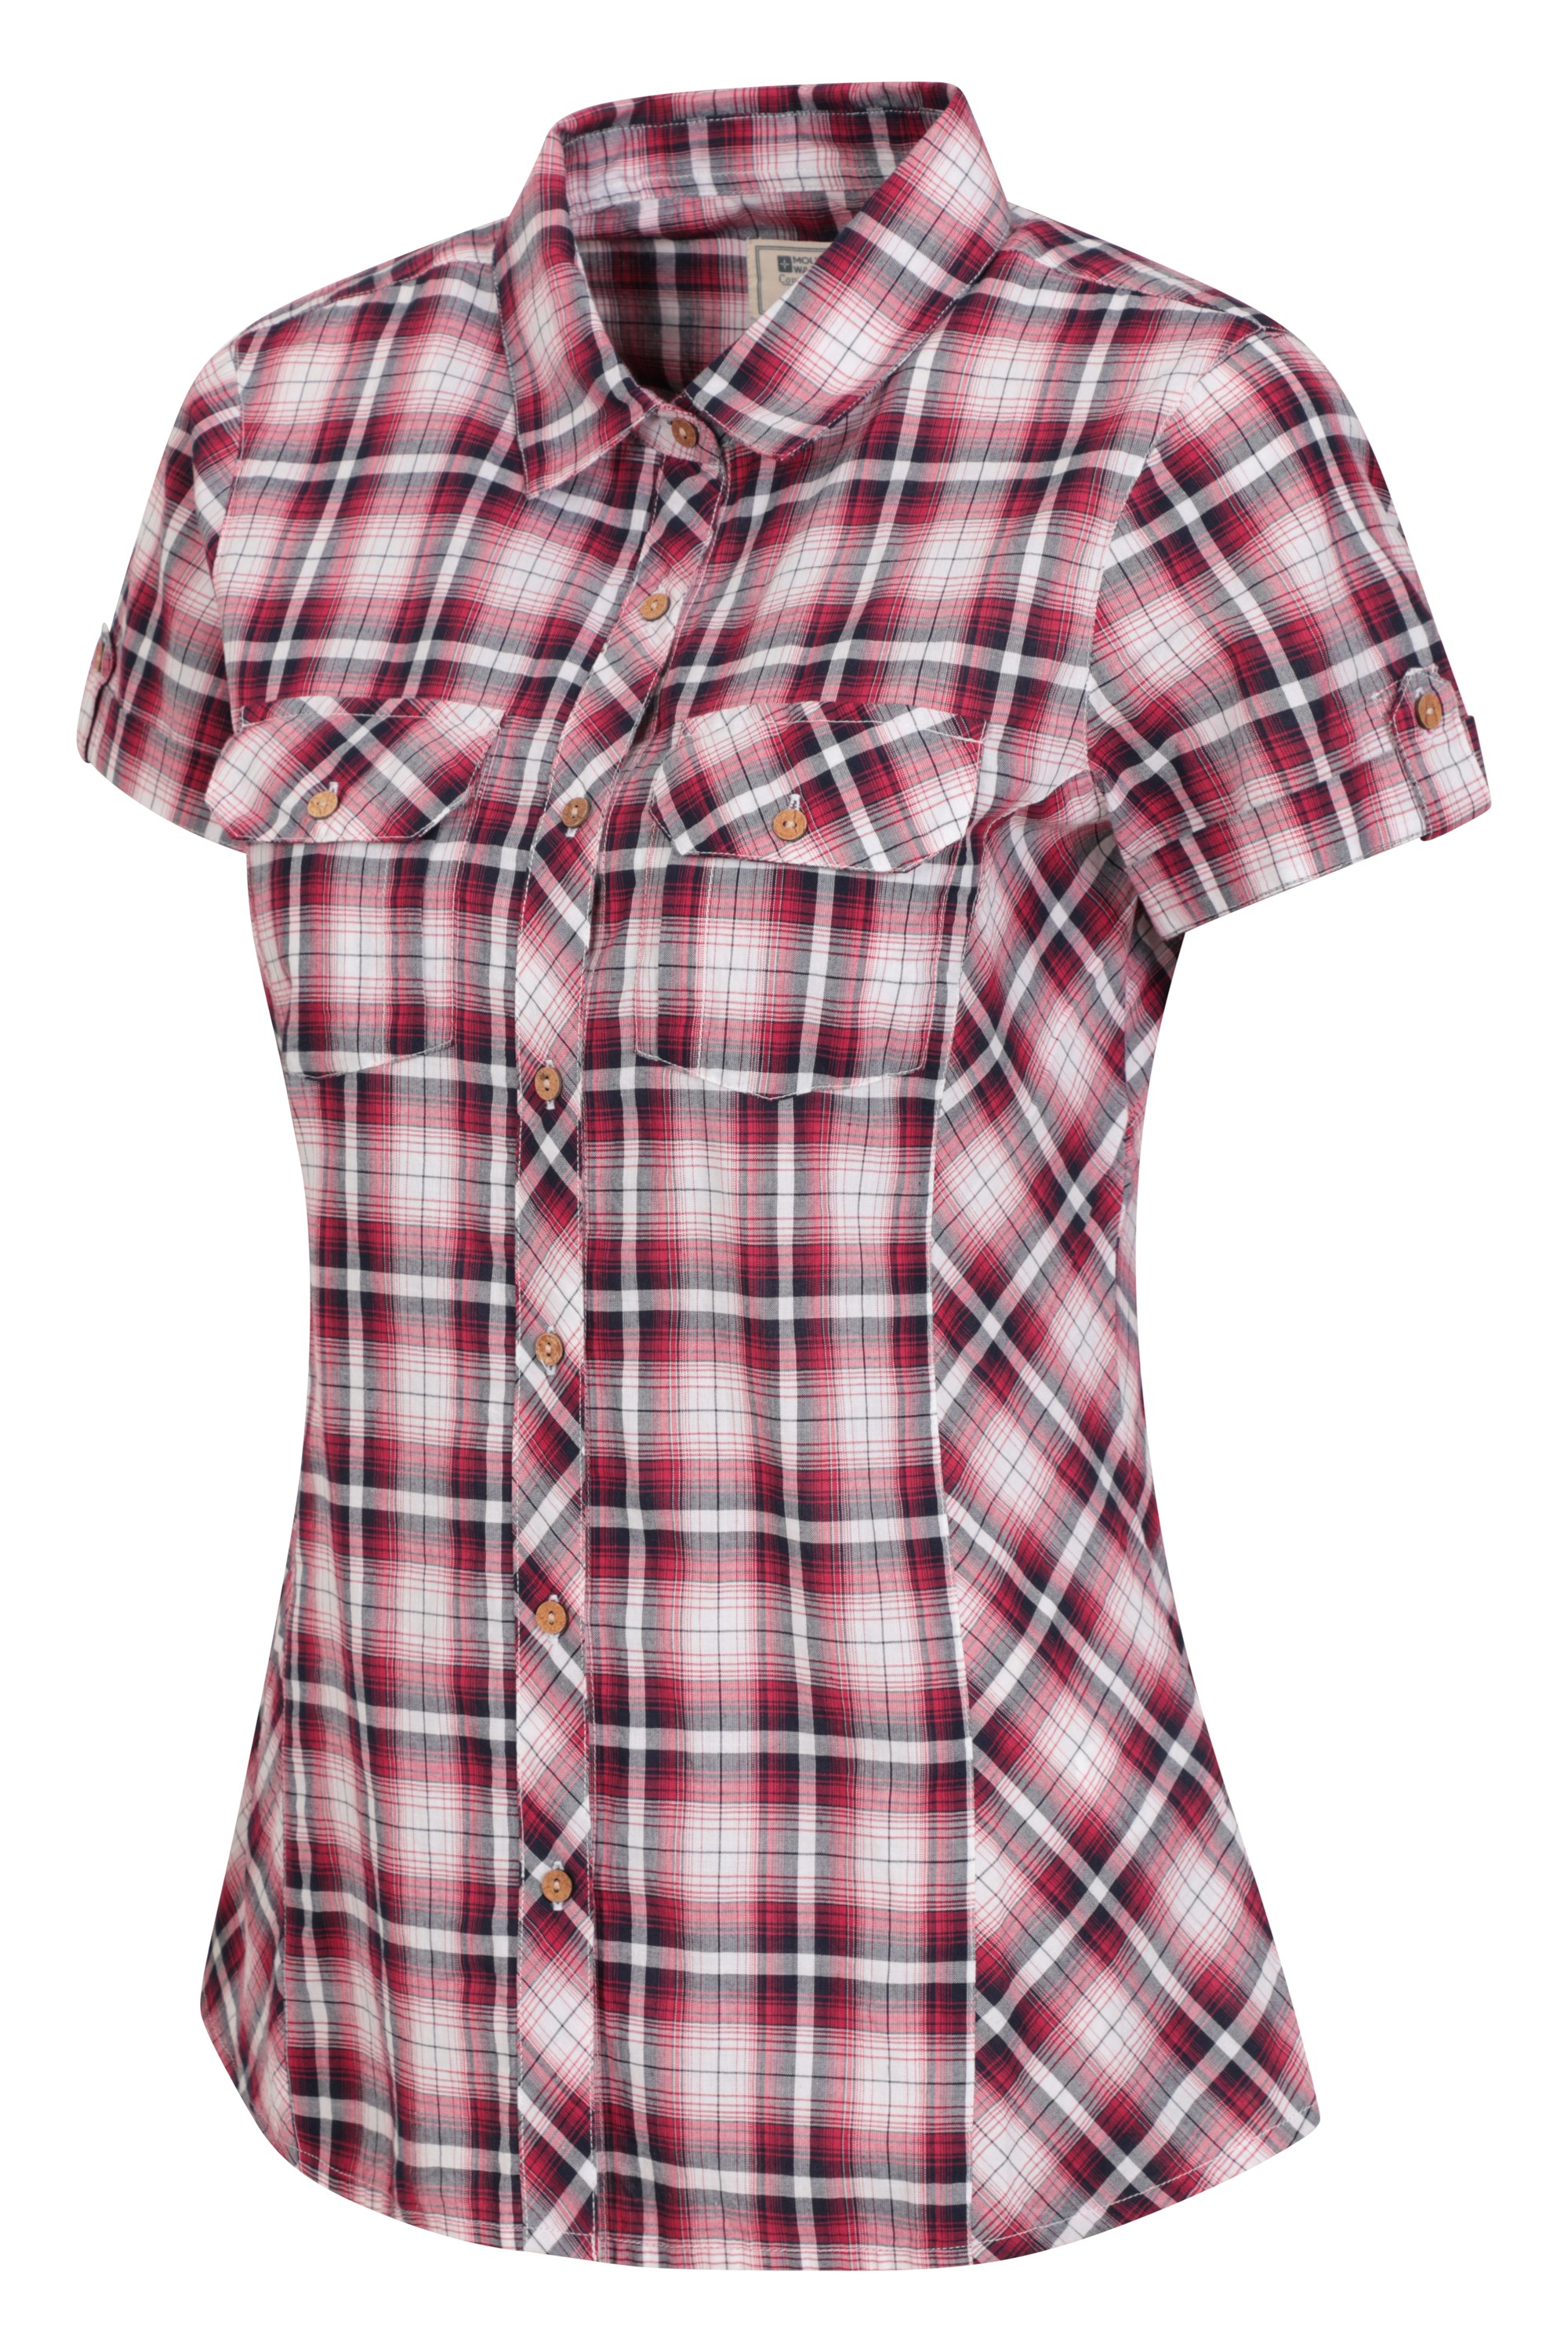 Caminar Camisa Informal Mountain Warehouse Camisa de algodón Holiday para Mujer Top de Manga Corta para Mujer para Viajar Camisa Ligera de Verano para Mujer 